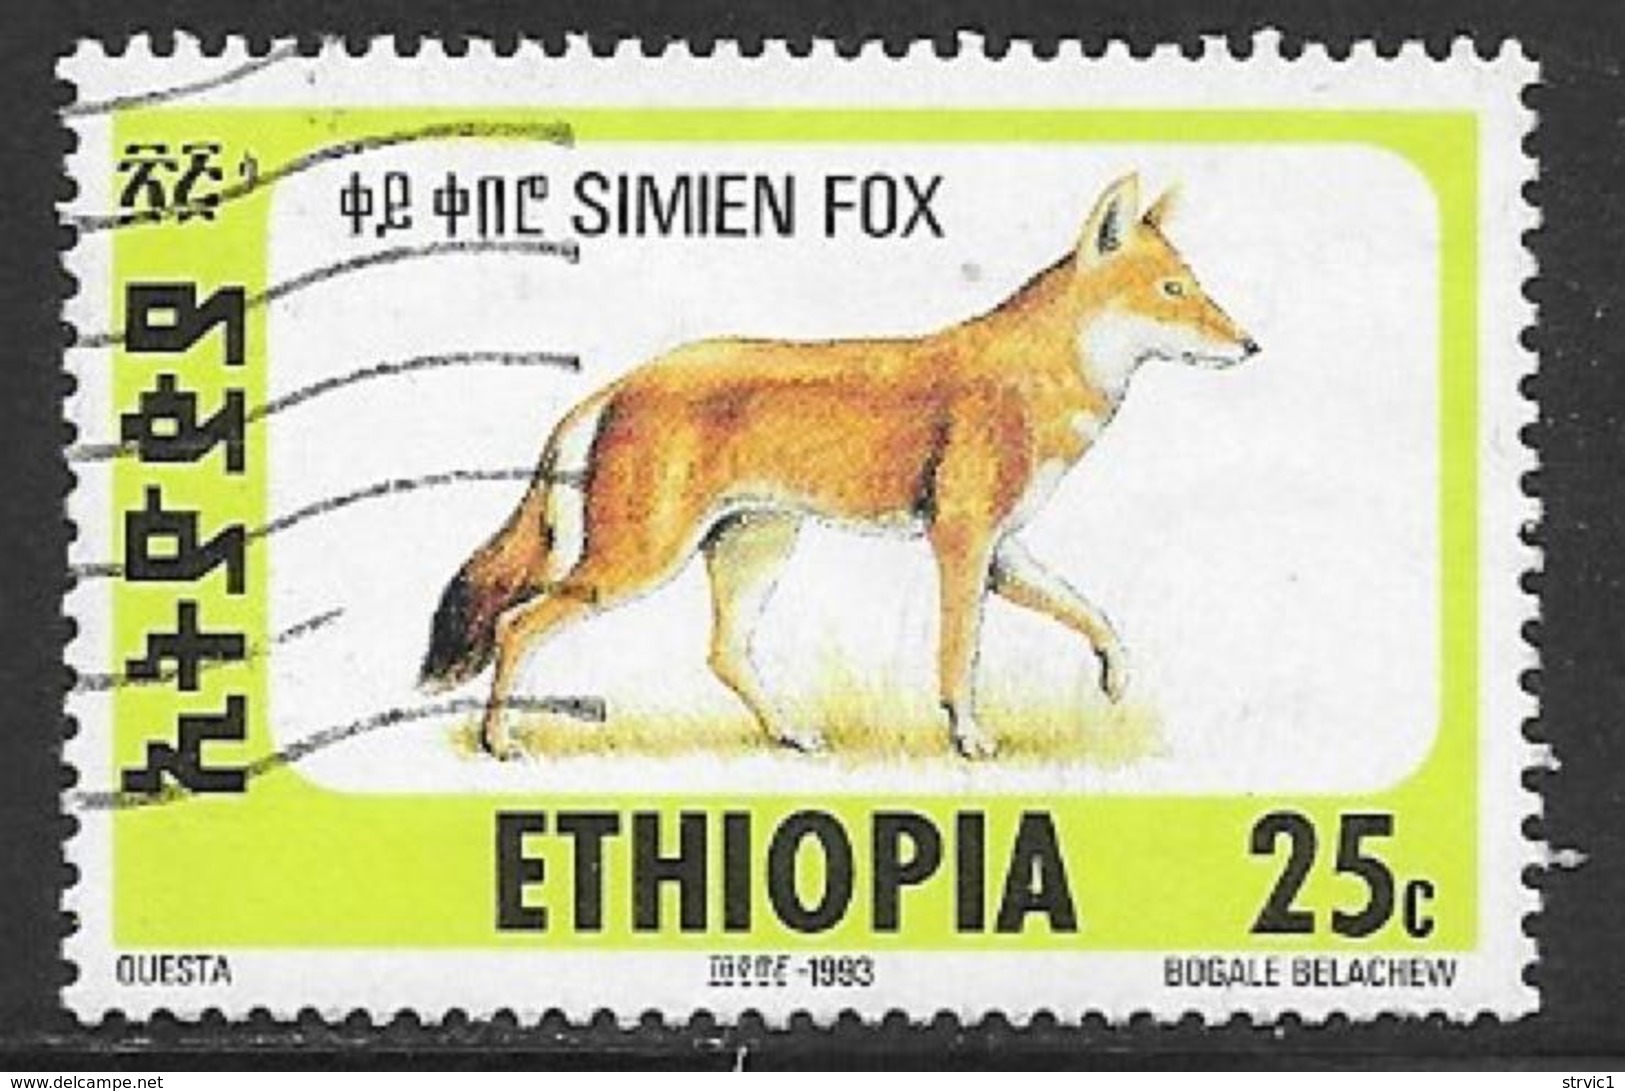 Ethiopia Scott # 1393E Used Simien Fox, 1994 - Ethiopia